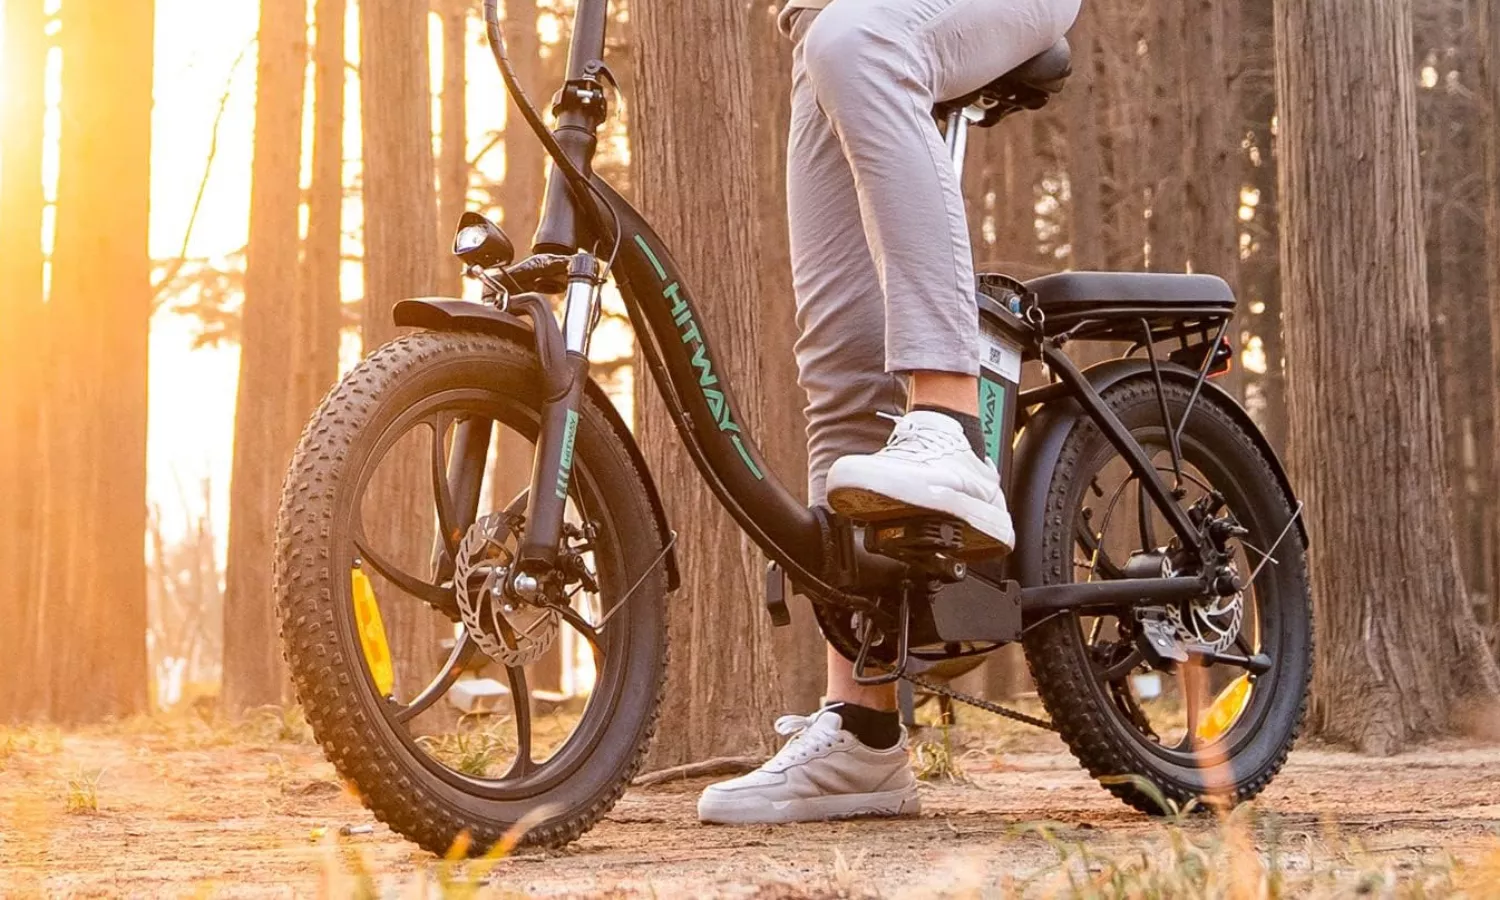 Con esta bicicleta podrás moverte tanto por carretera como por terrenos más angostos sin proecupaciones gracias a sus ruedas y amortiguadores profesionales.